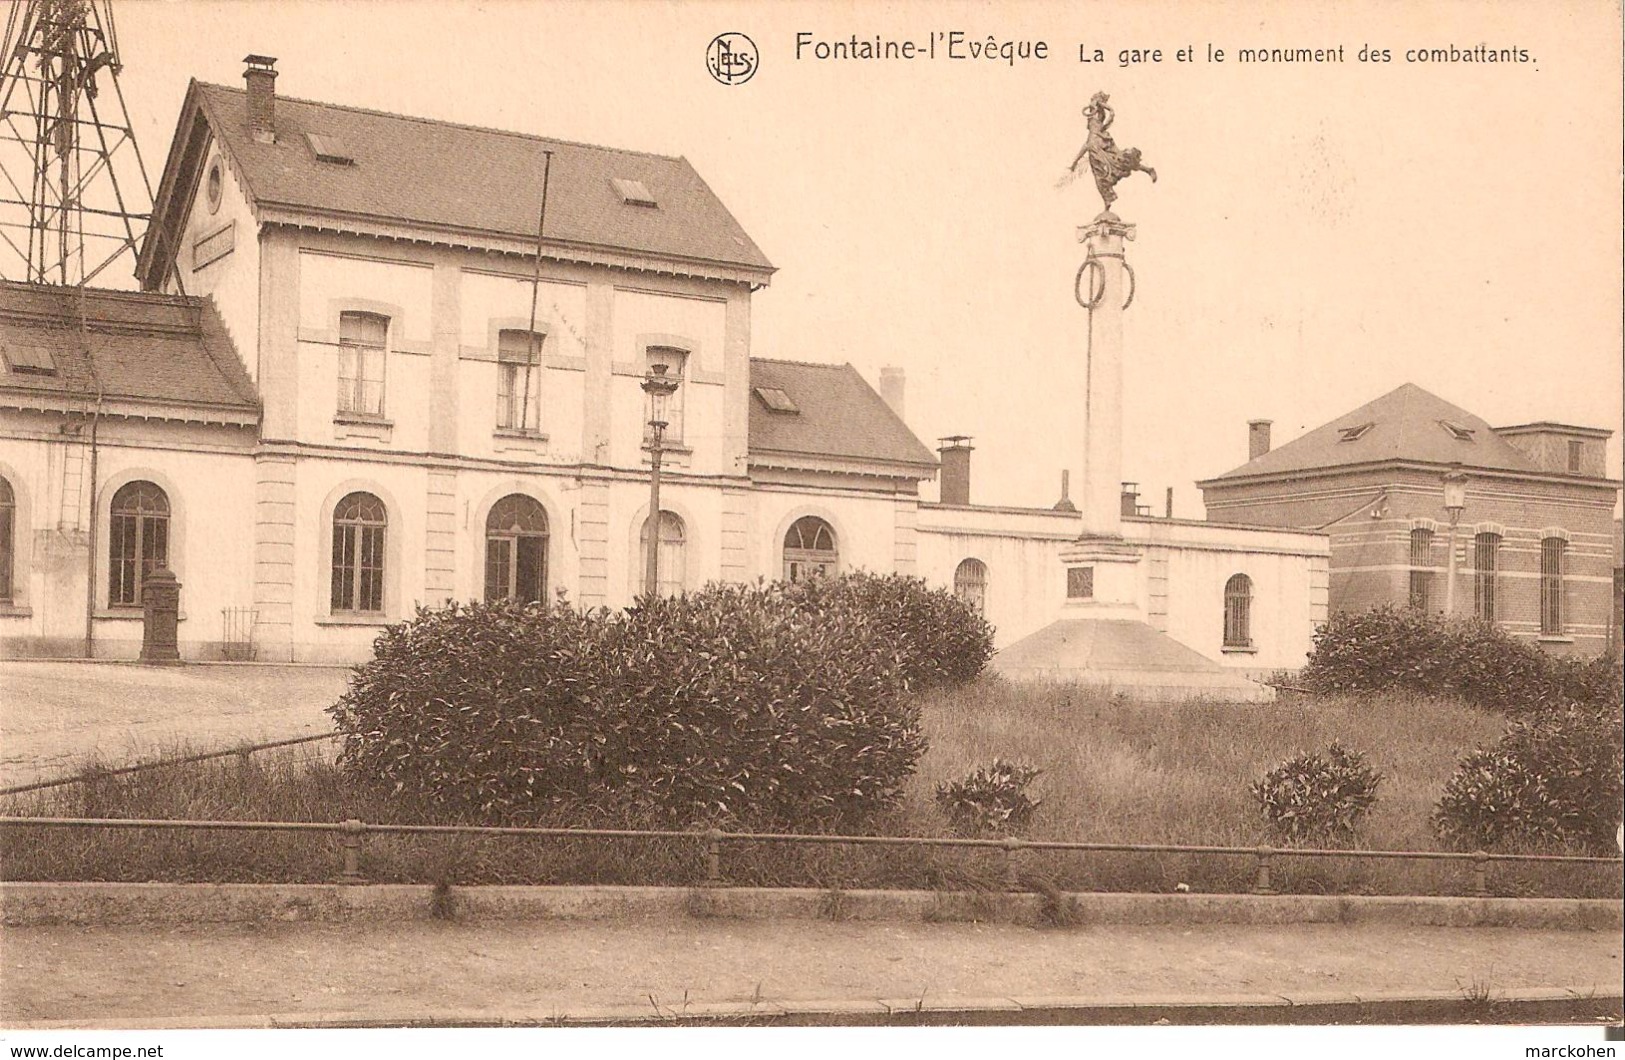 FONTAINE-L´EVÊQUE (6140) : La Gare Et Le Monument Des Combattants. Cliché Très Rare. CPA. - Fontaine-l'Evêque